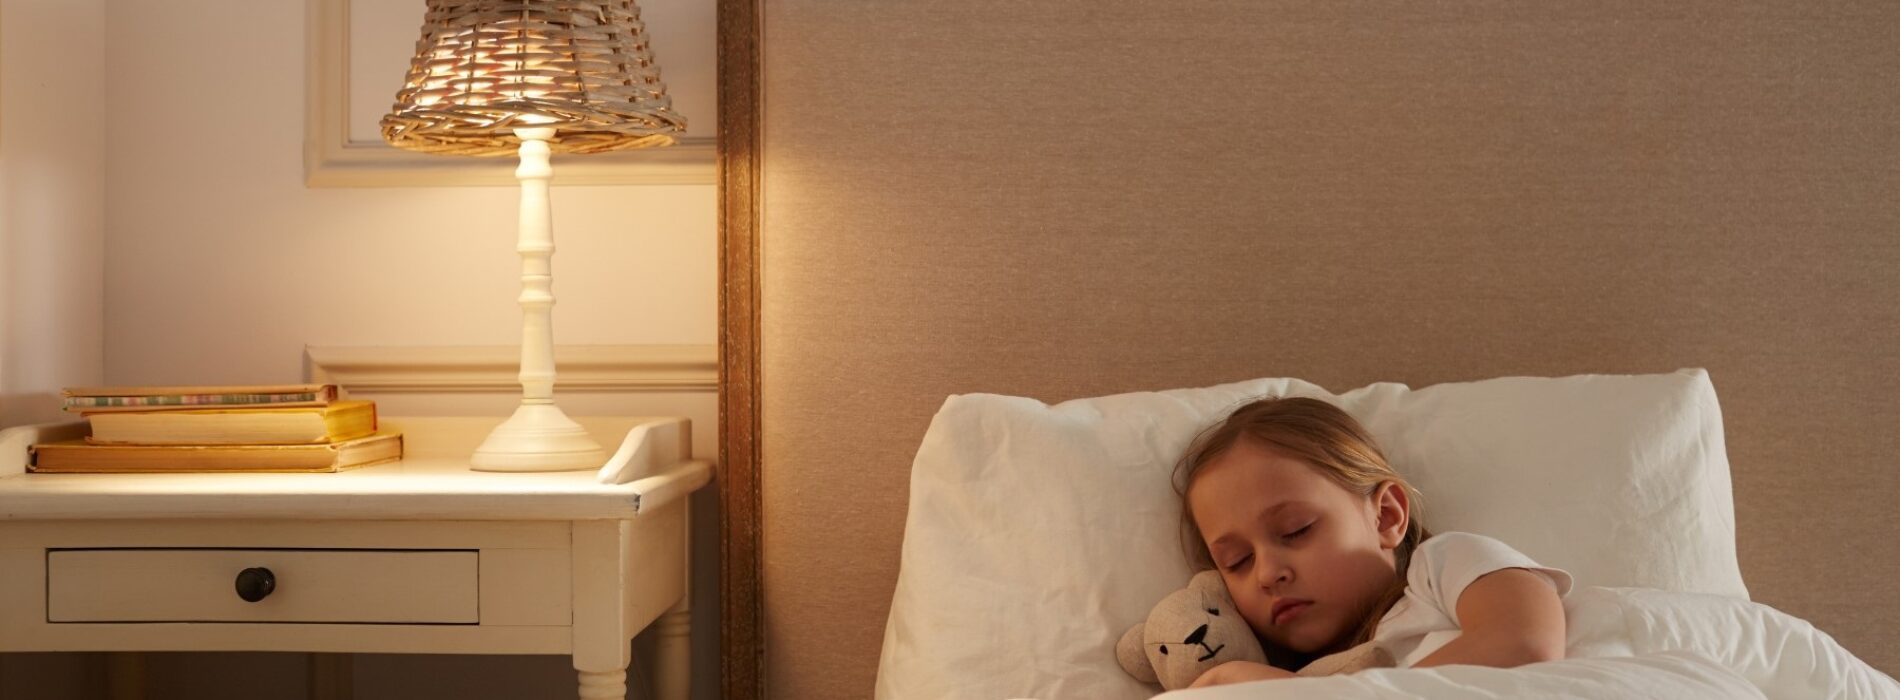 Czy dobry materac wpływa na jakość snu naszego dziecka? Sprawdź modele dostępne u autoryzowanego dystrybutora marki Hilding.